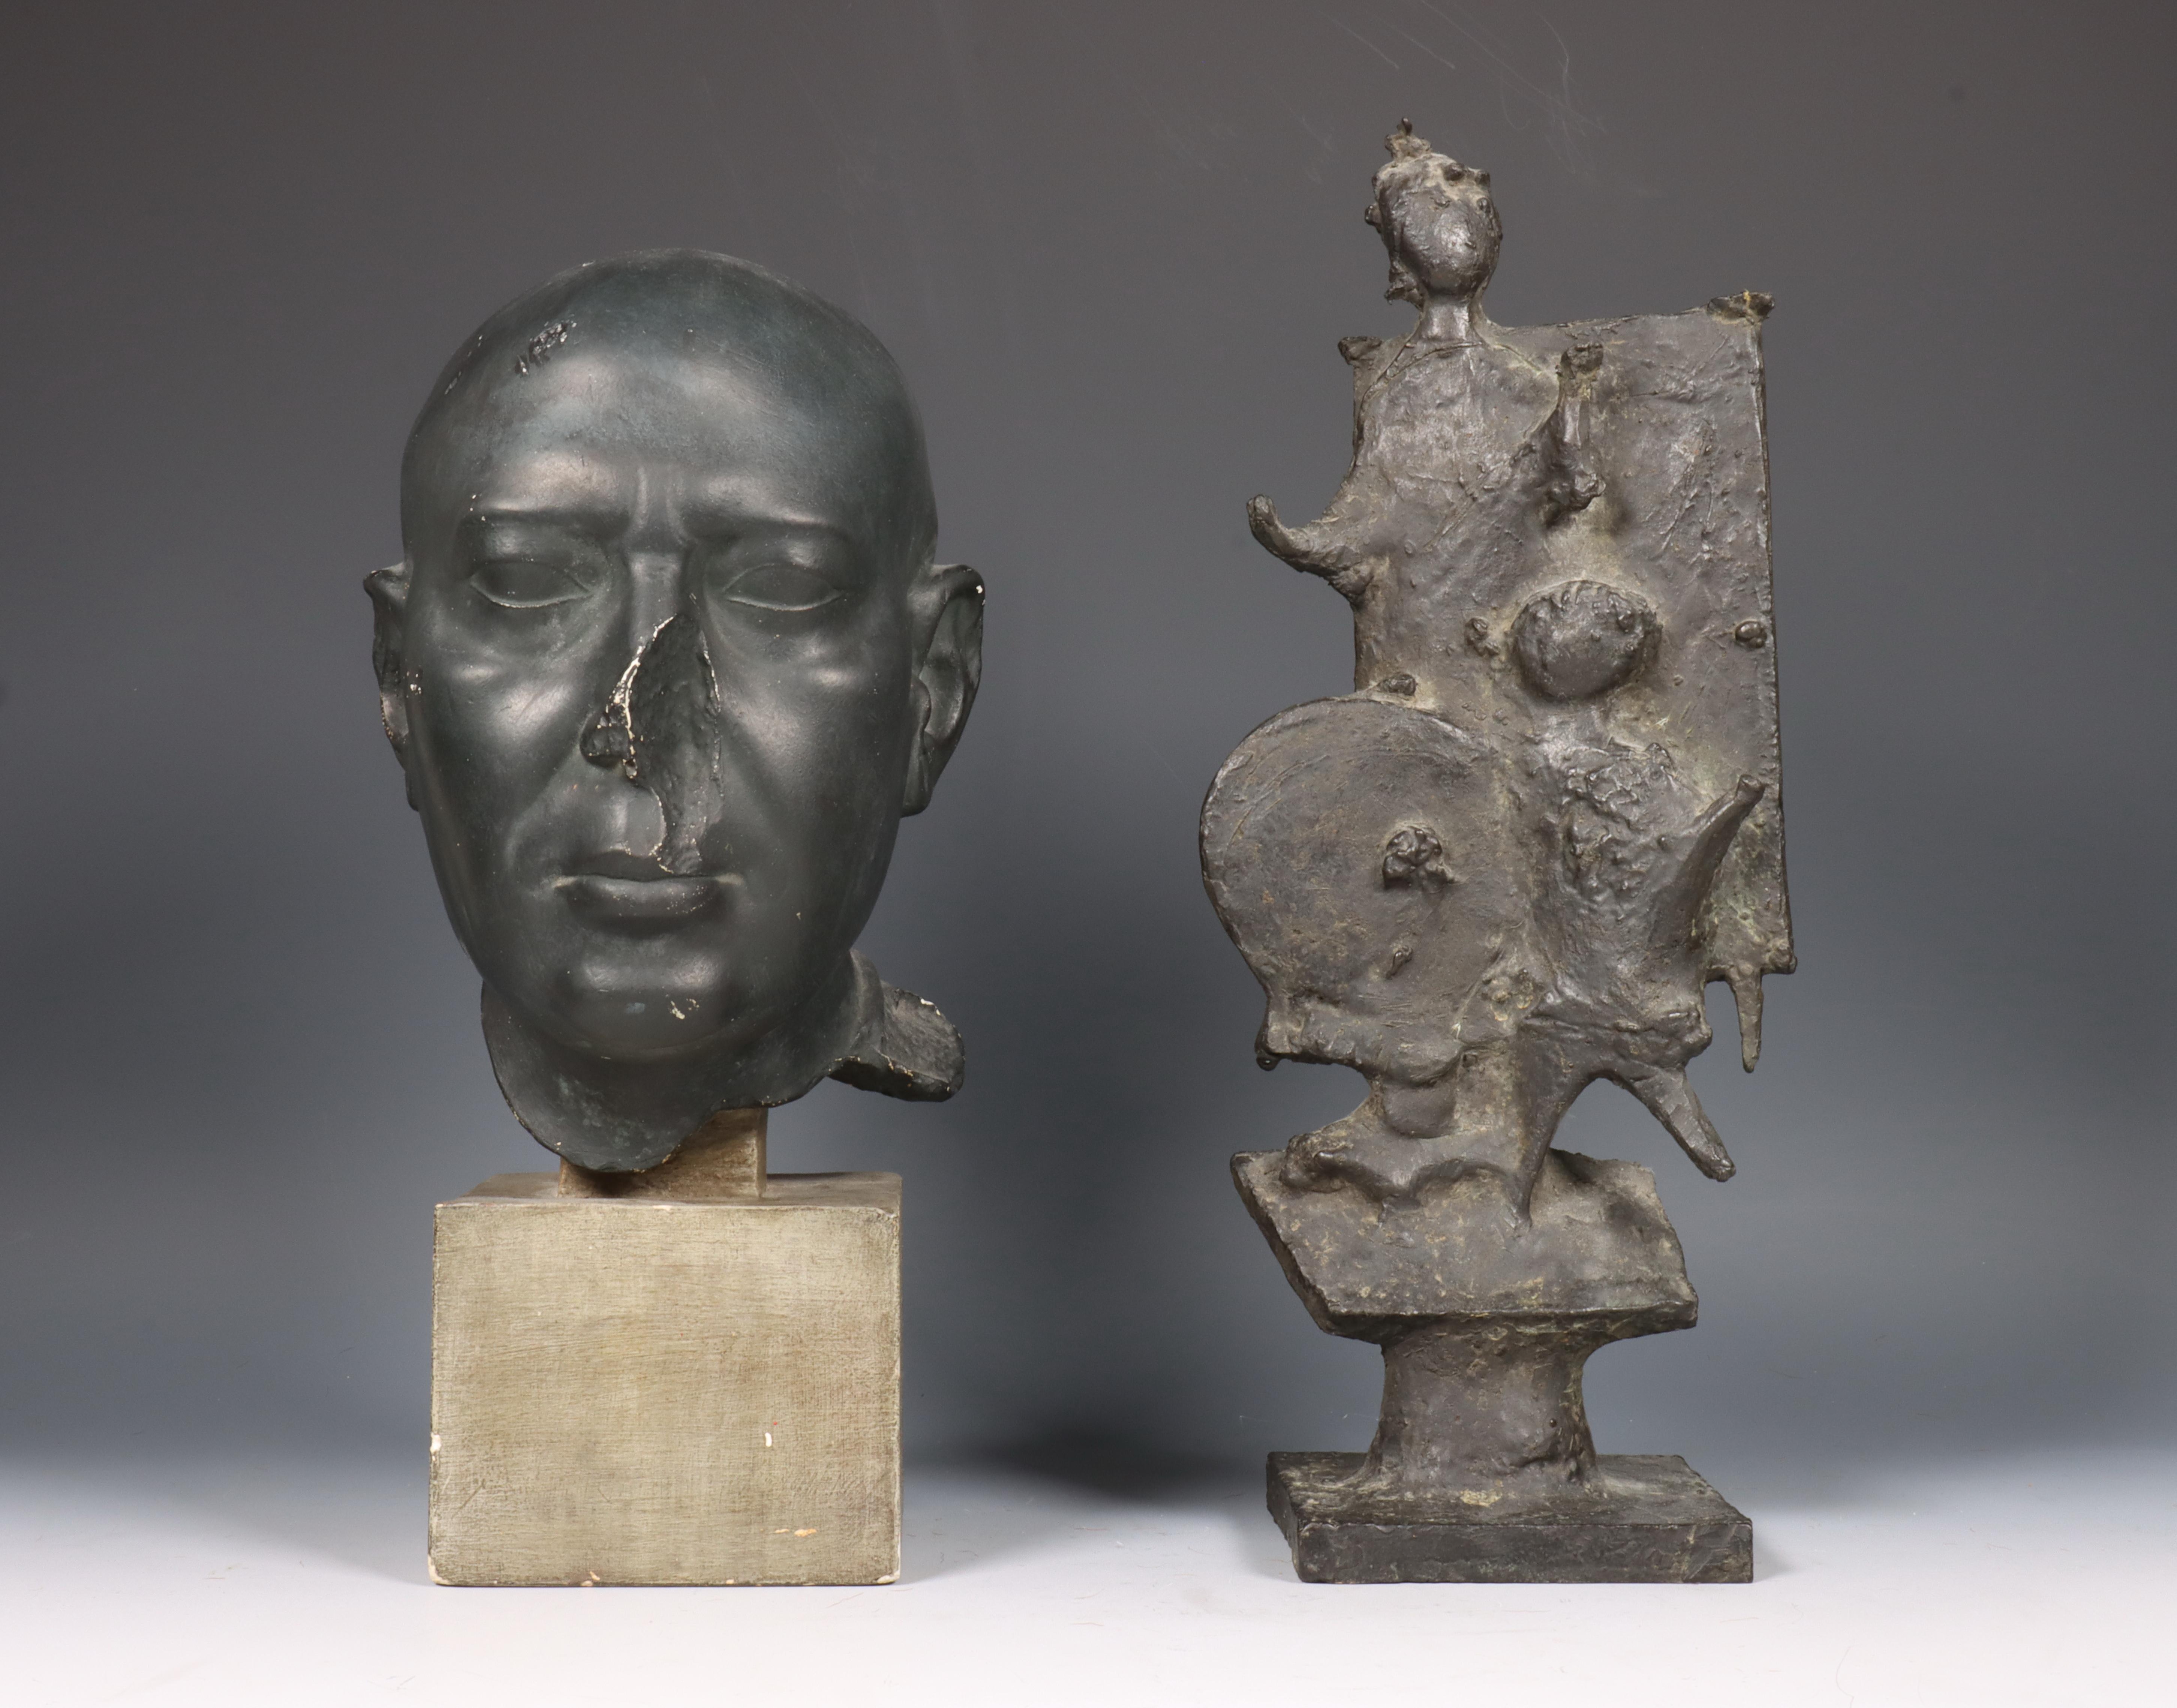 Bronzen sculptuur, ca. 1970 en gipsen museumkopie buste